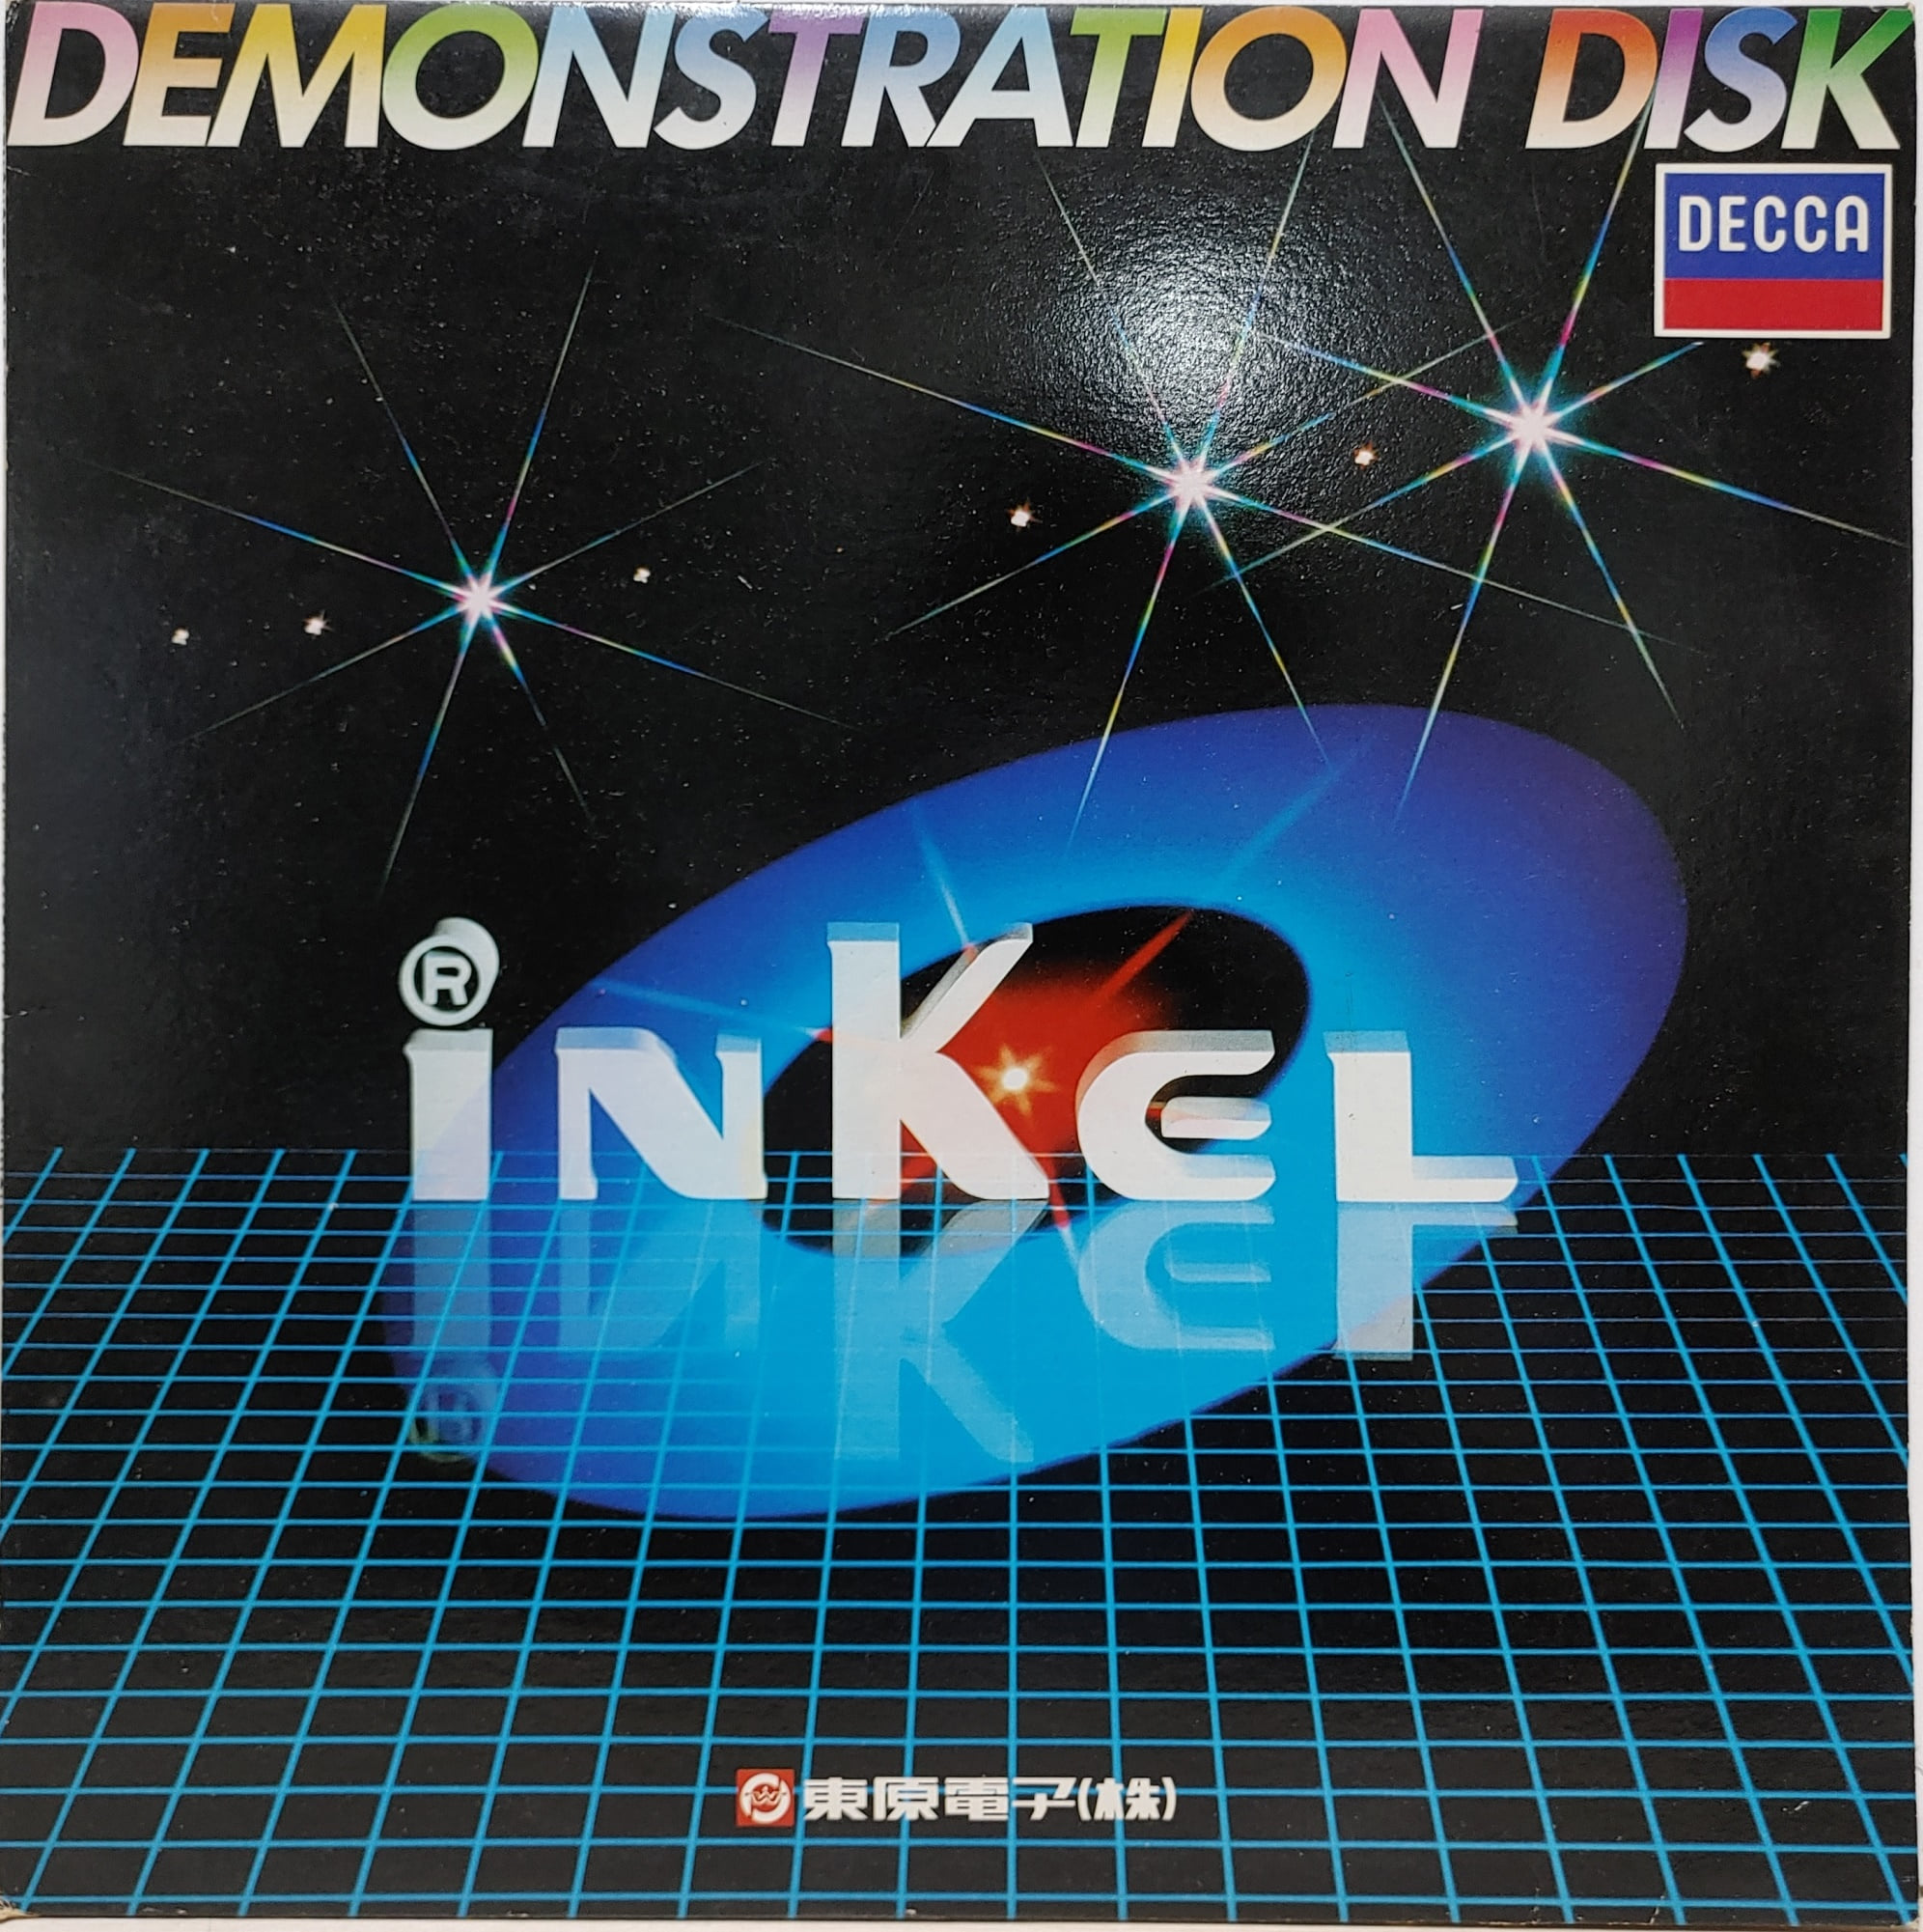 Inkel Demonstration Disk